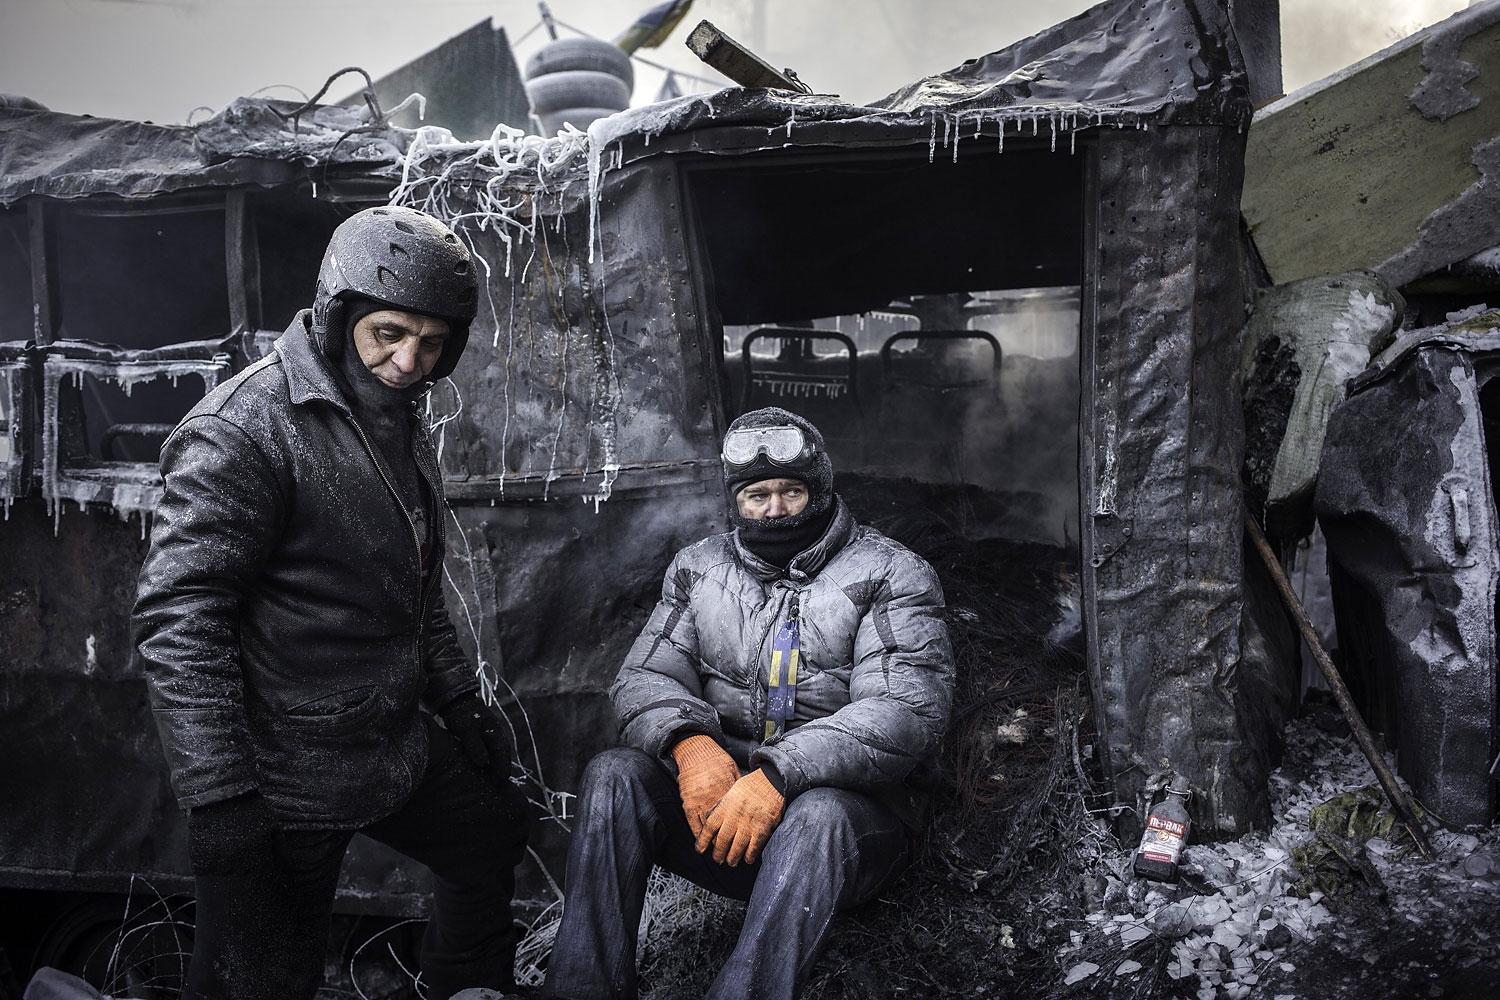 Protesters behind barricades in Kiev, Jan. 25, 2014.